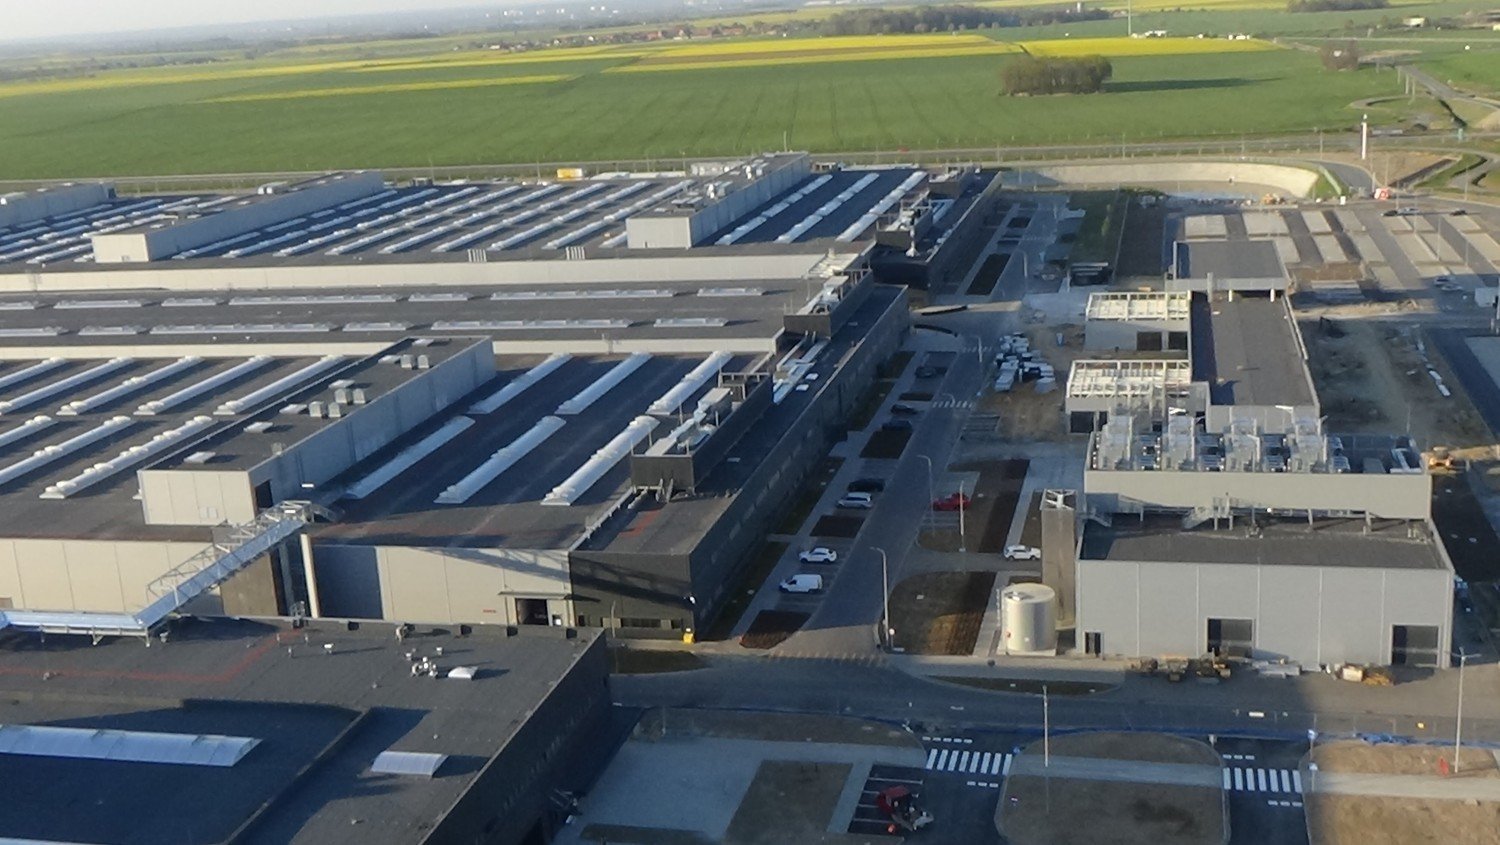 Fabryka Mercedesa z lotu ptaka - tak rośnie gigantyczny zakład [ZDJĘCIA] |  Legnica Nasze Miasto